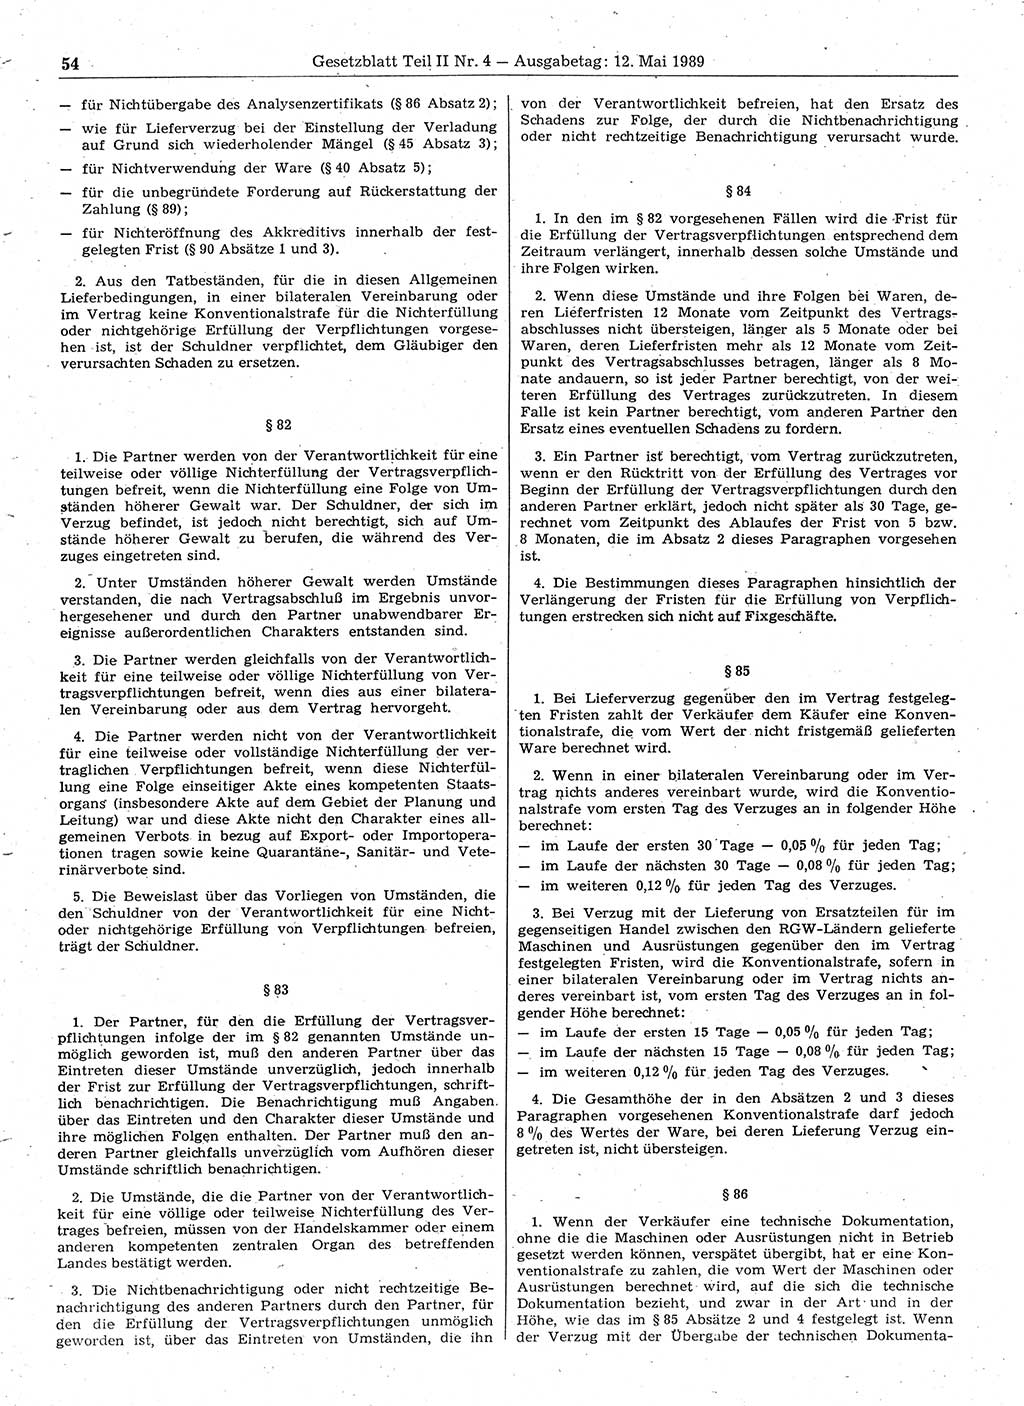 Gesetzblatt (GBl.) der Deutschen Demokratischen Republik (DDR) Teil ⅠⅠ 1989, Seite 54 (GBl. DDR ⅠⅠ 1989, S. 54)